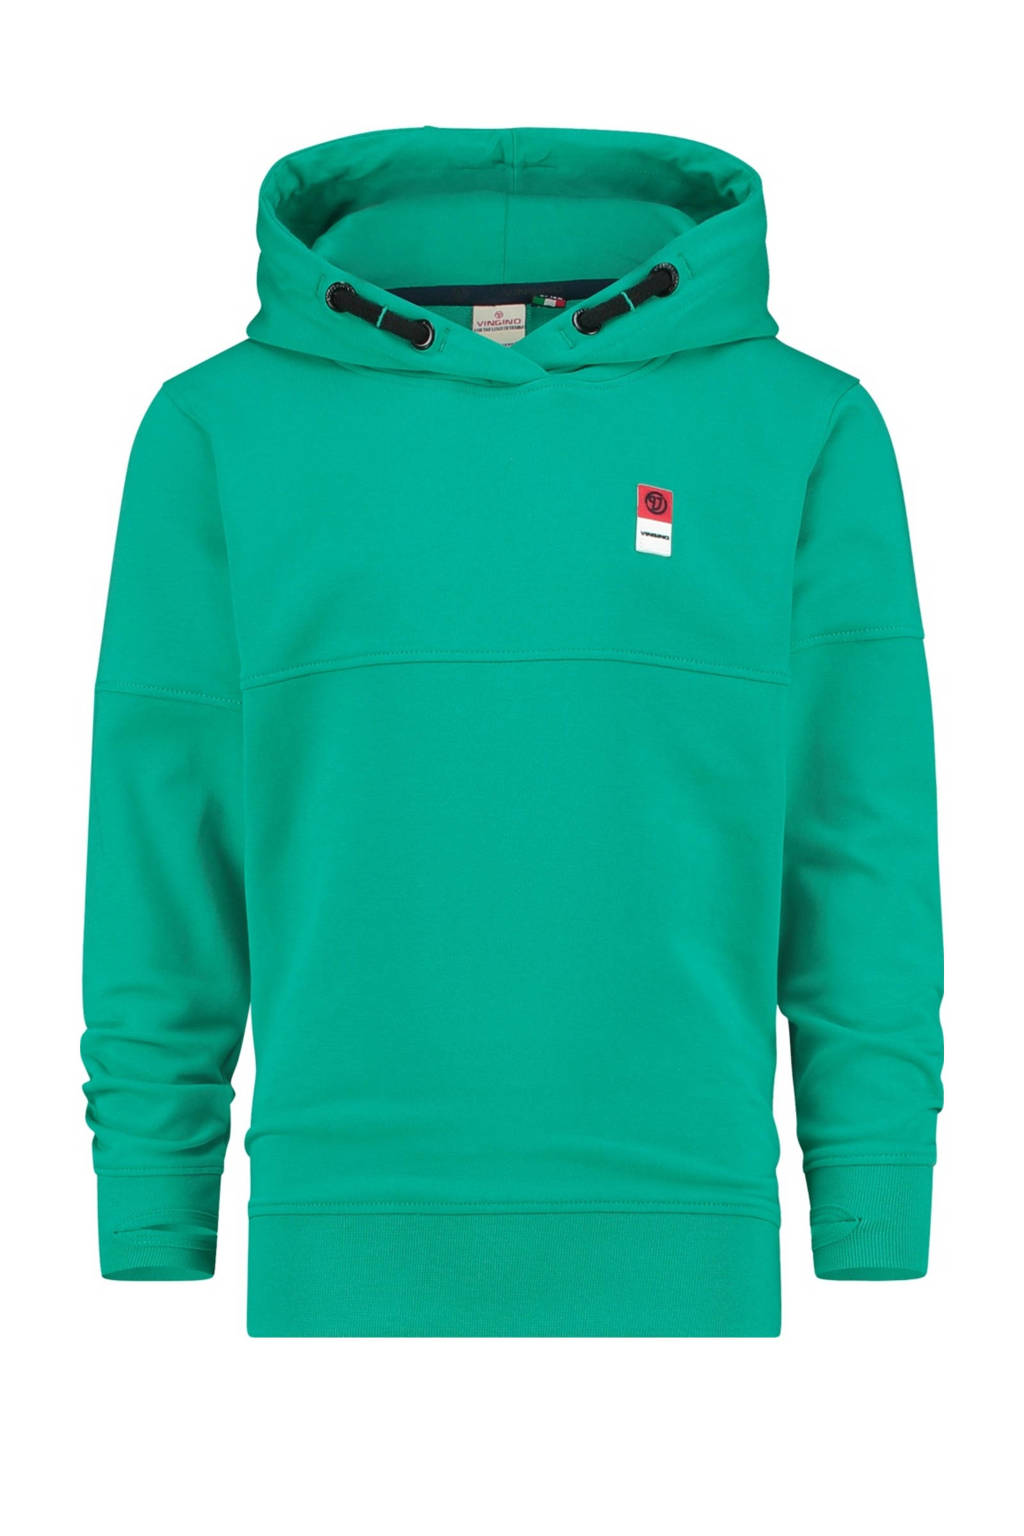 Groene jongens Vingino Essentials hoodie van duurzame sweatstof met lange mouwen en capuchon